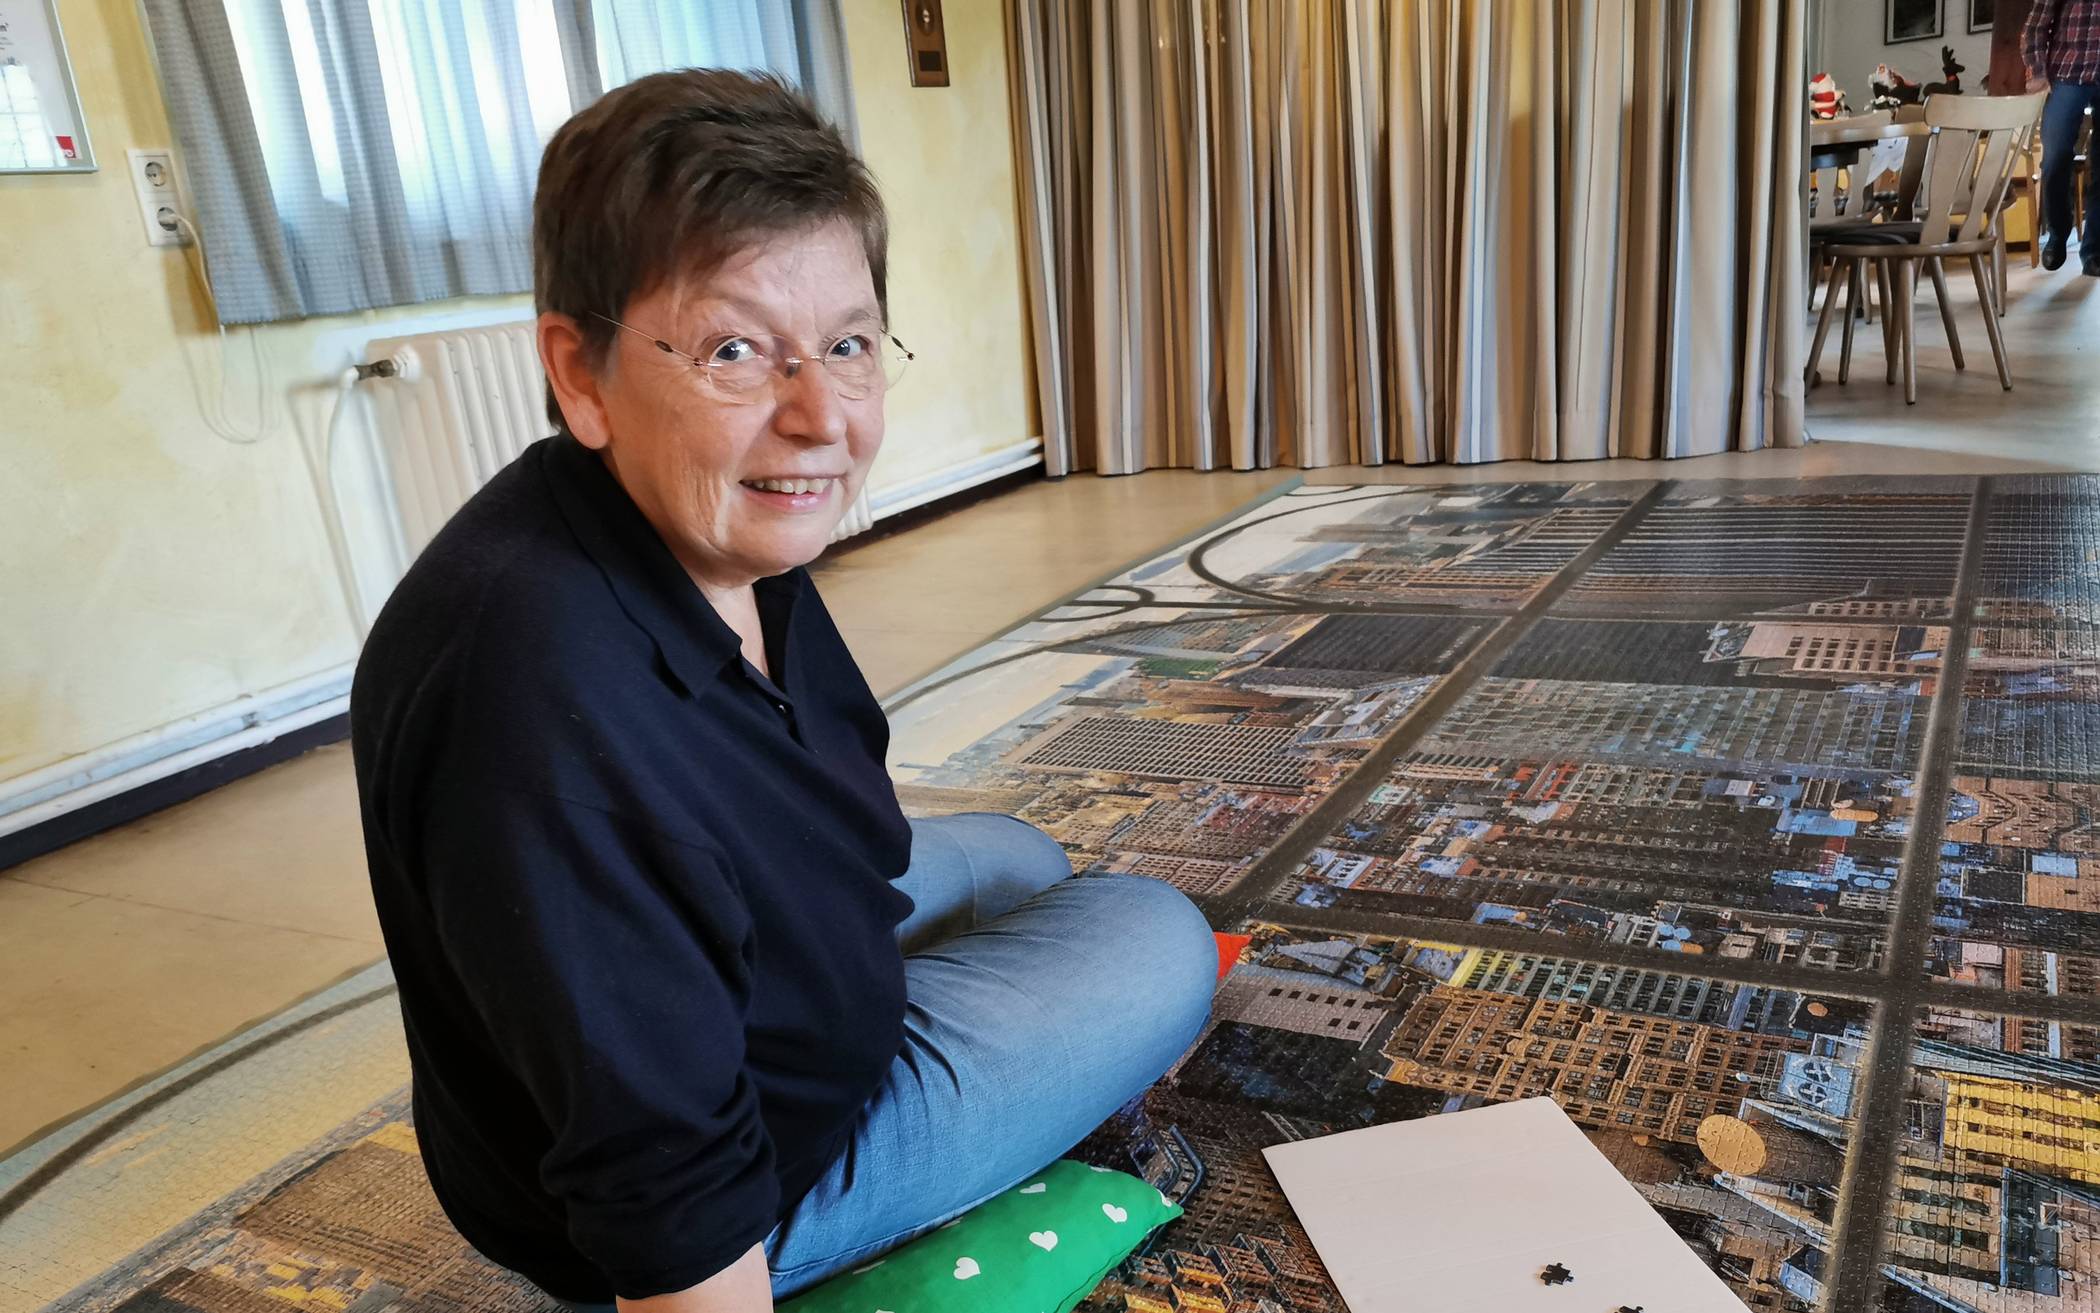  Normalerweise puzzelt Gisela Schlömp Bilder mit 1.000 oder auch mal 4.000 Teilen. Das 32.000er Puzzle war bisher ihr größtes Puzzle.  